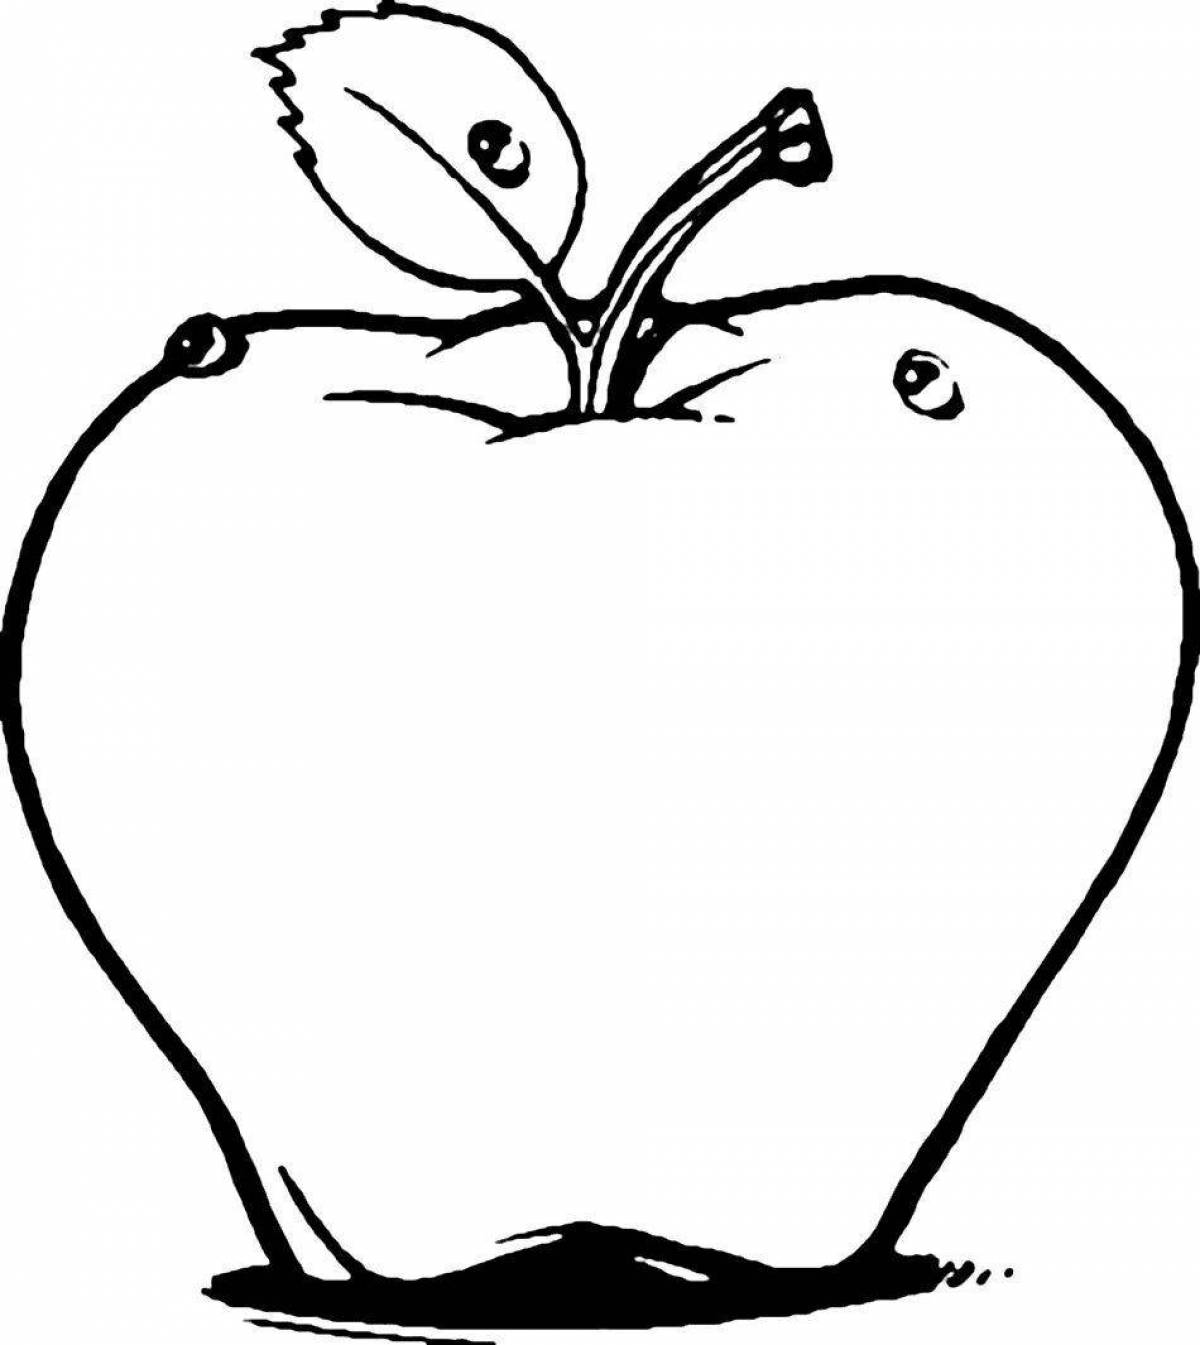 Симпатичный рисунок яблока